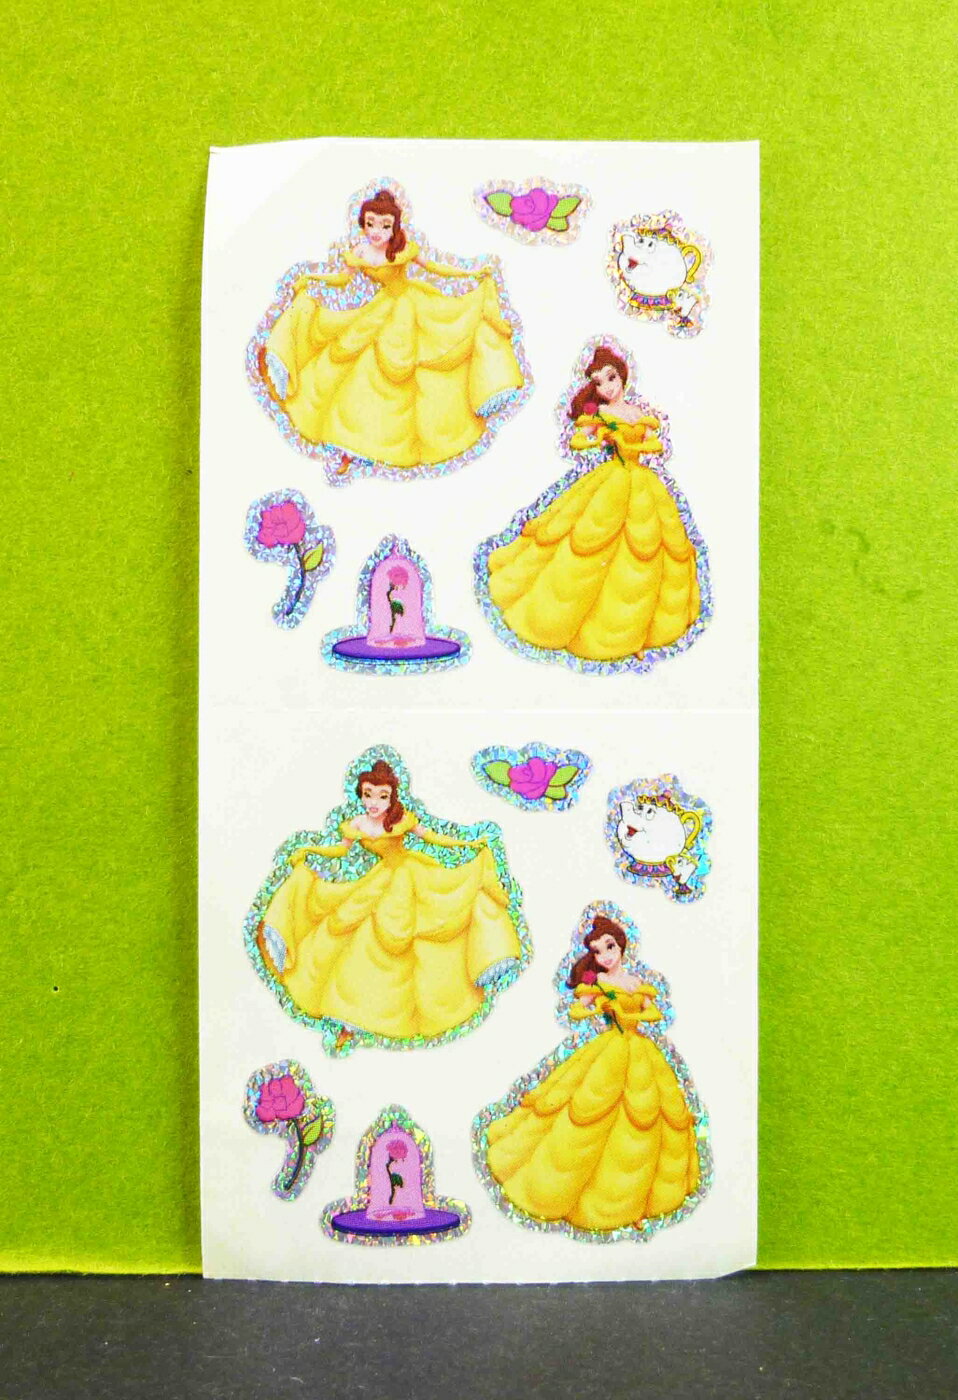 【震撼精品百貨】公主 系列Princess 造型貼紙-貝兒-亮邊 震撼日式精品百貨